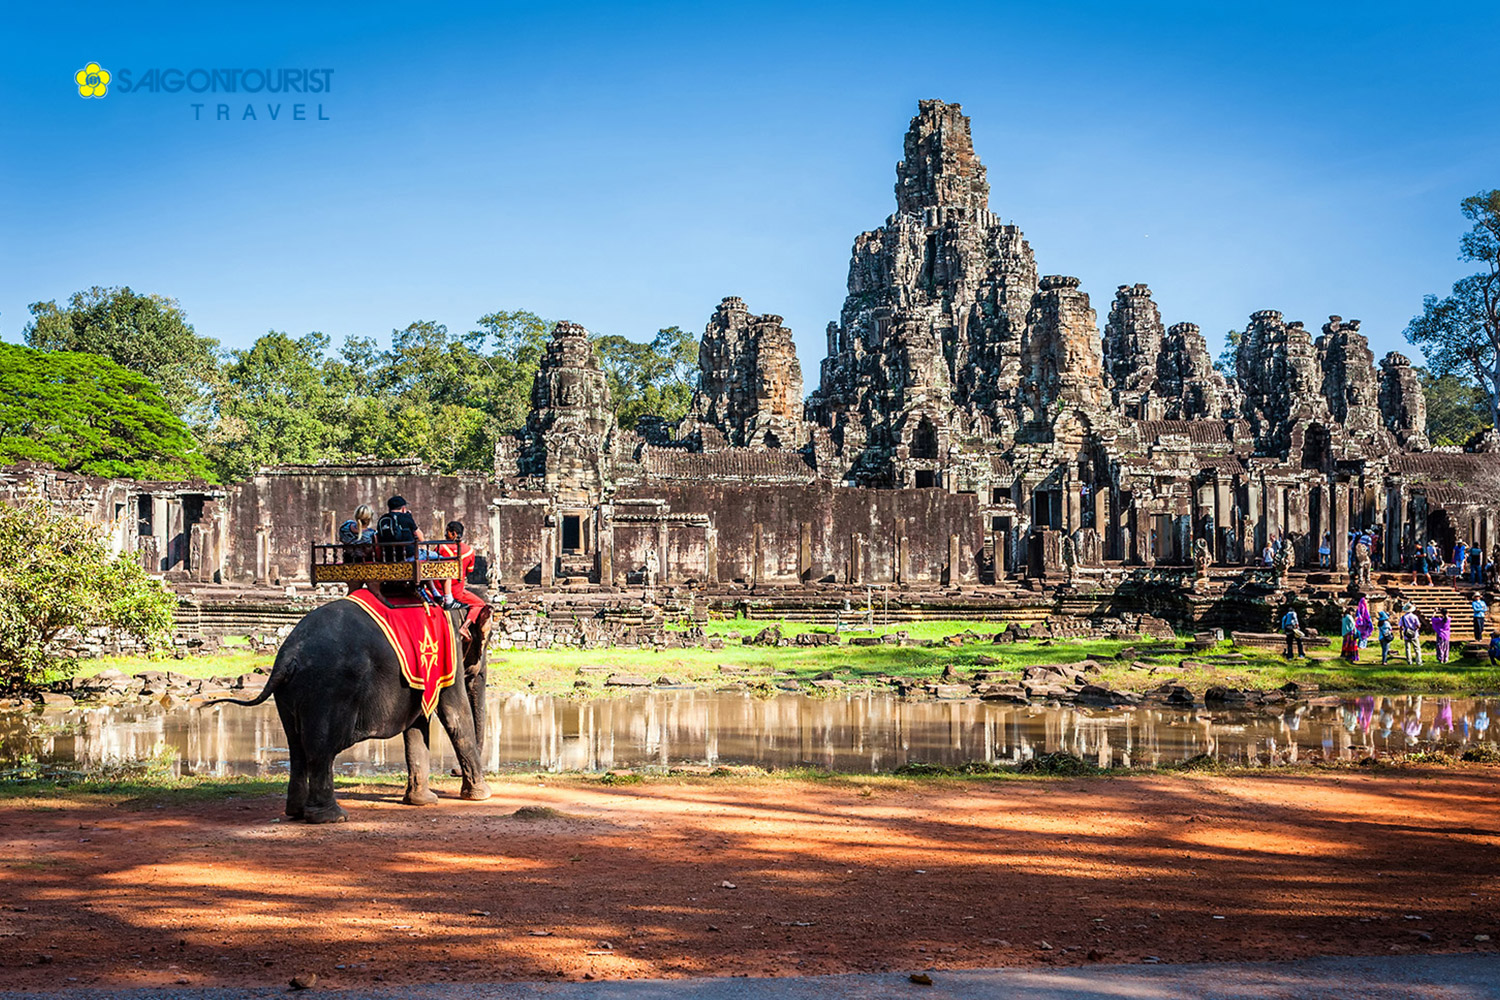 Du lịch Campuchia [Siem Reap - Phnom Penh]